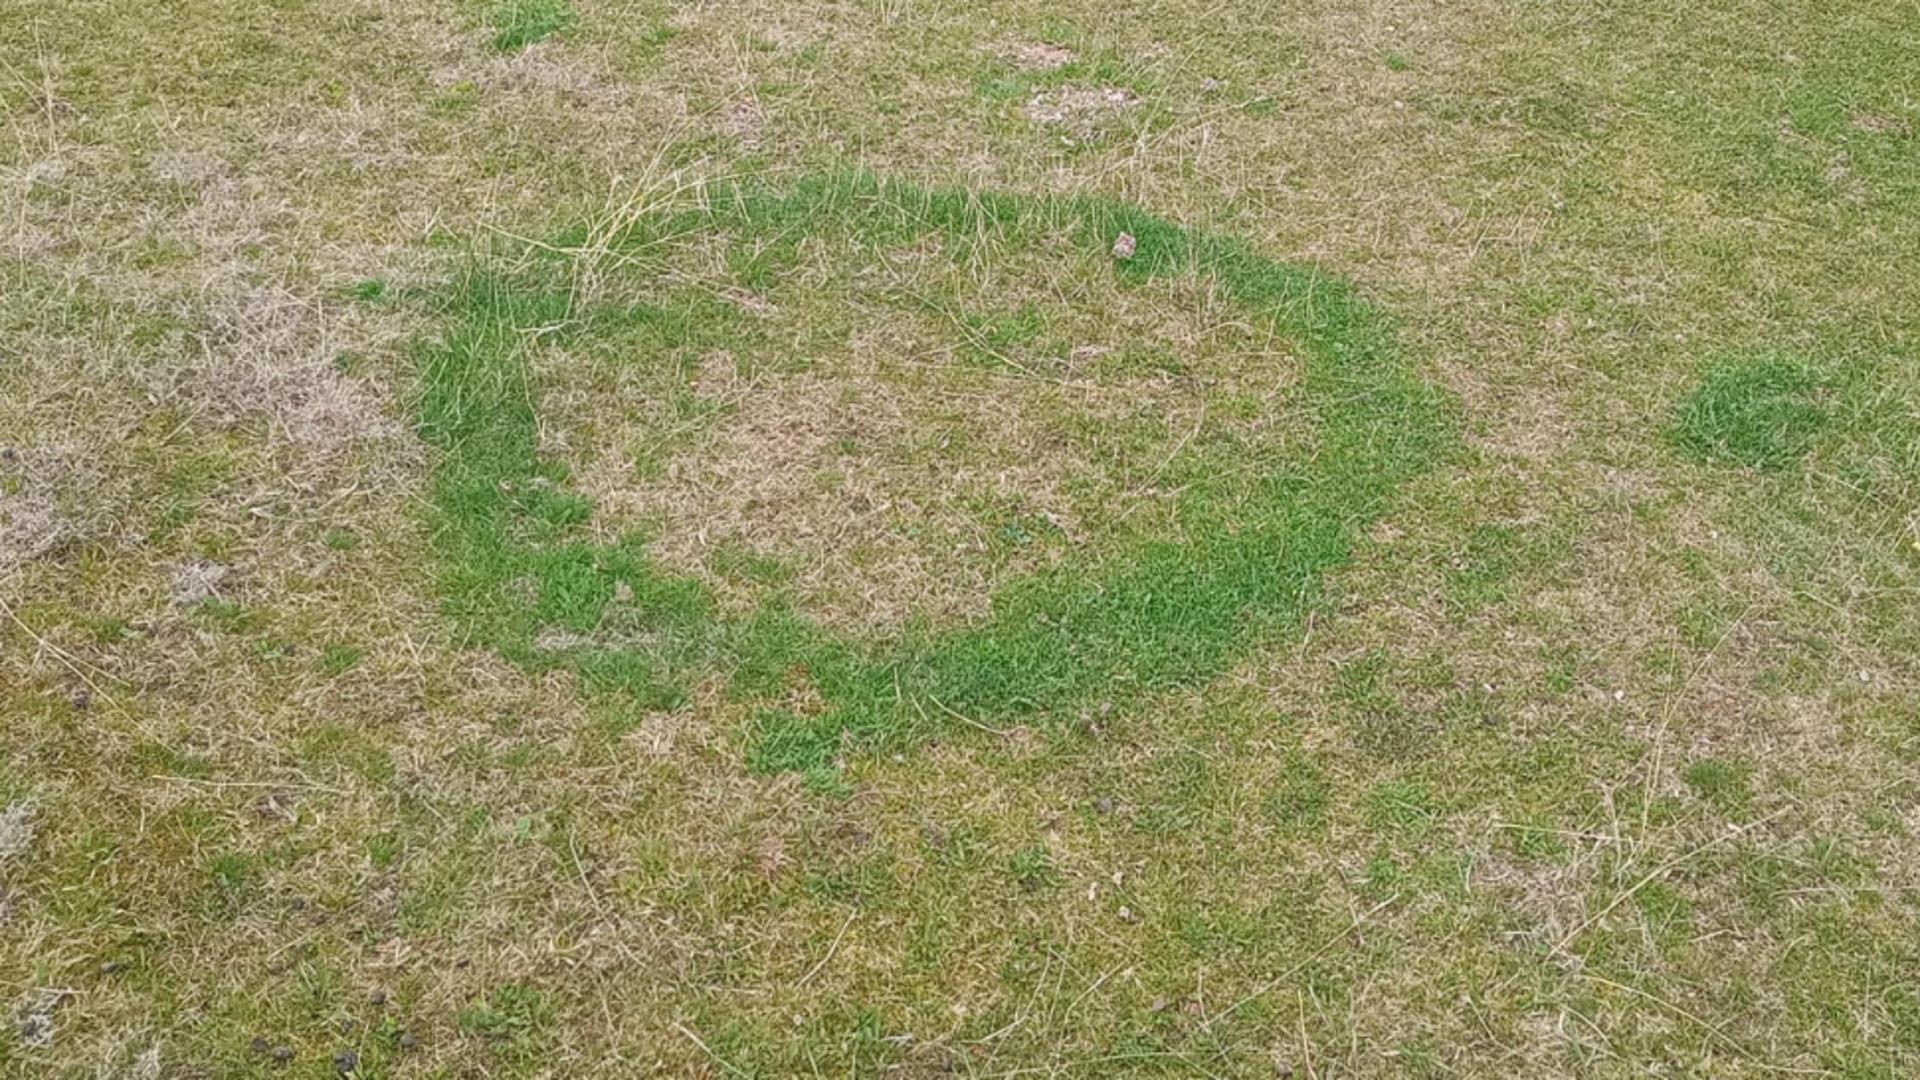 Un cerc misterios în iarbă apărut în Buzău a încins imaginația internauților. Foto: Facebook